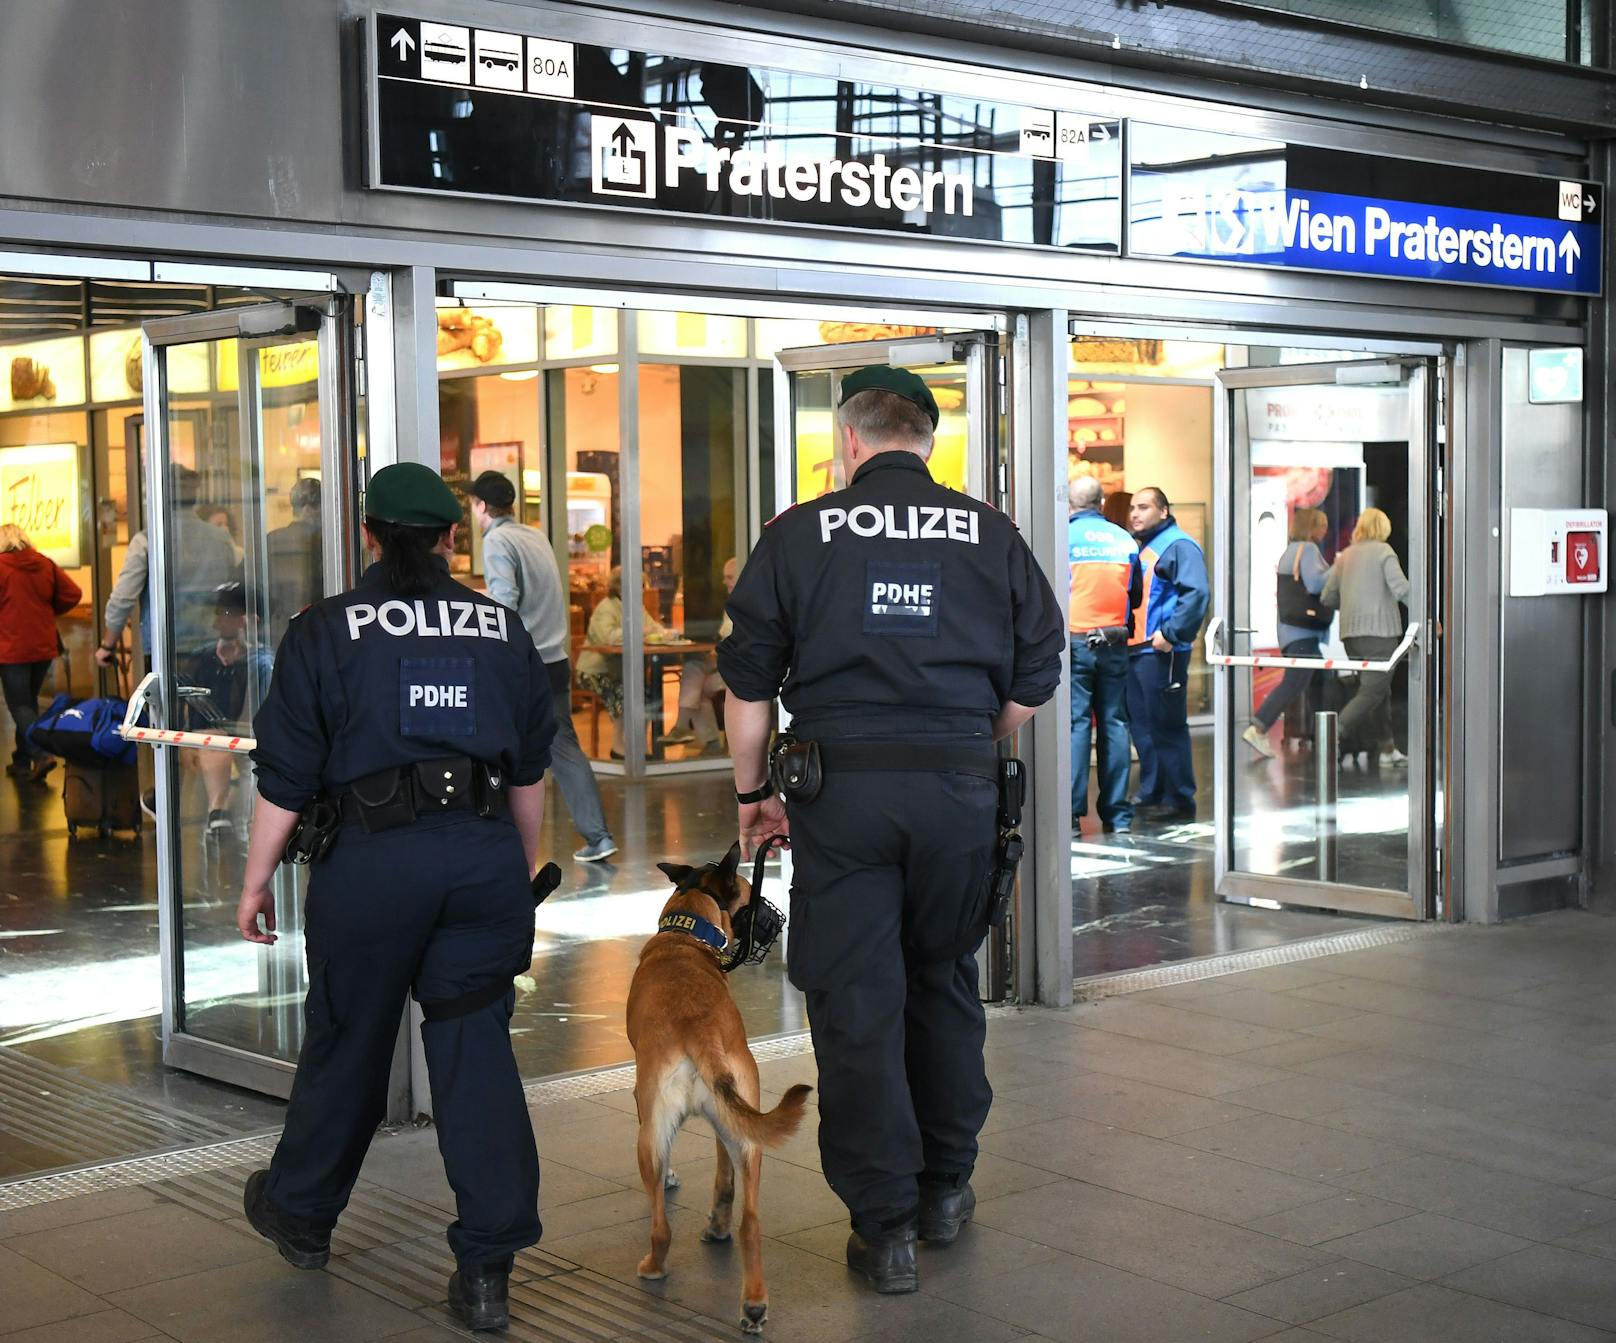 Polizisten am Wiener Praterstern. Symbolbild